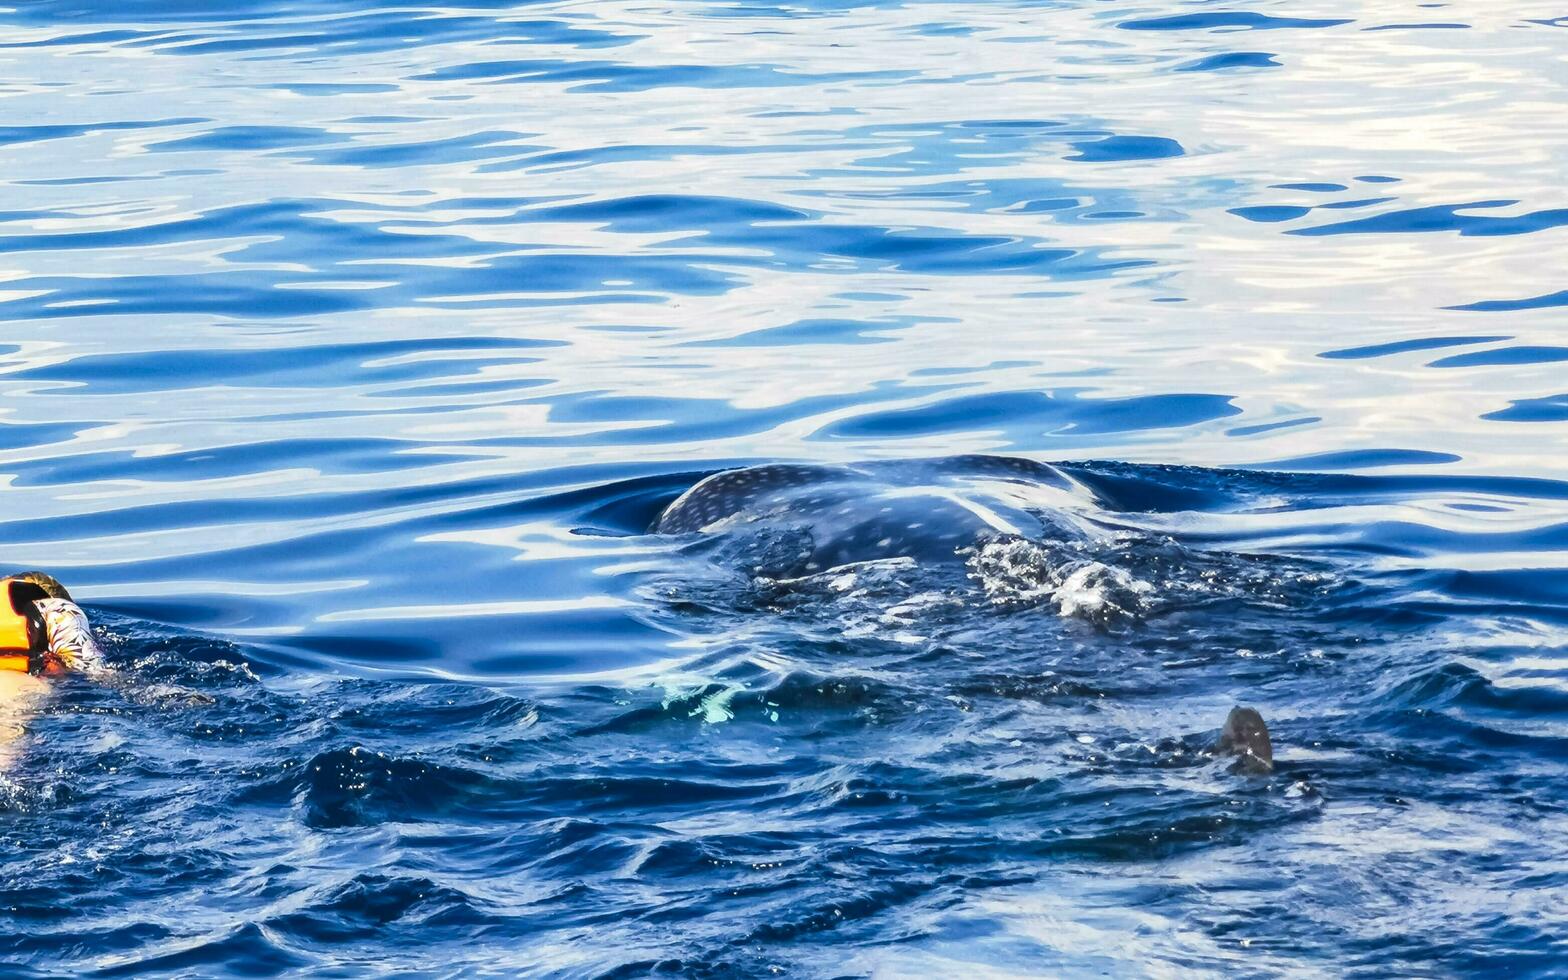 cancun quintana roo mexico 2022 enorme ballena tiburón nada en el agua superficie cancun México. foto